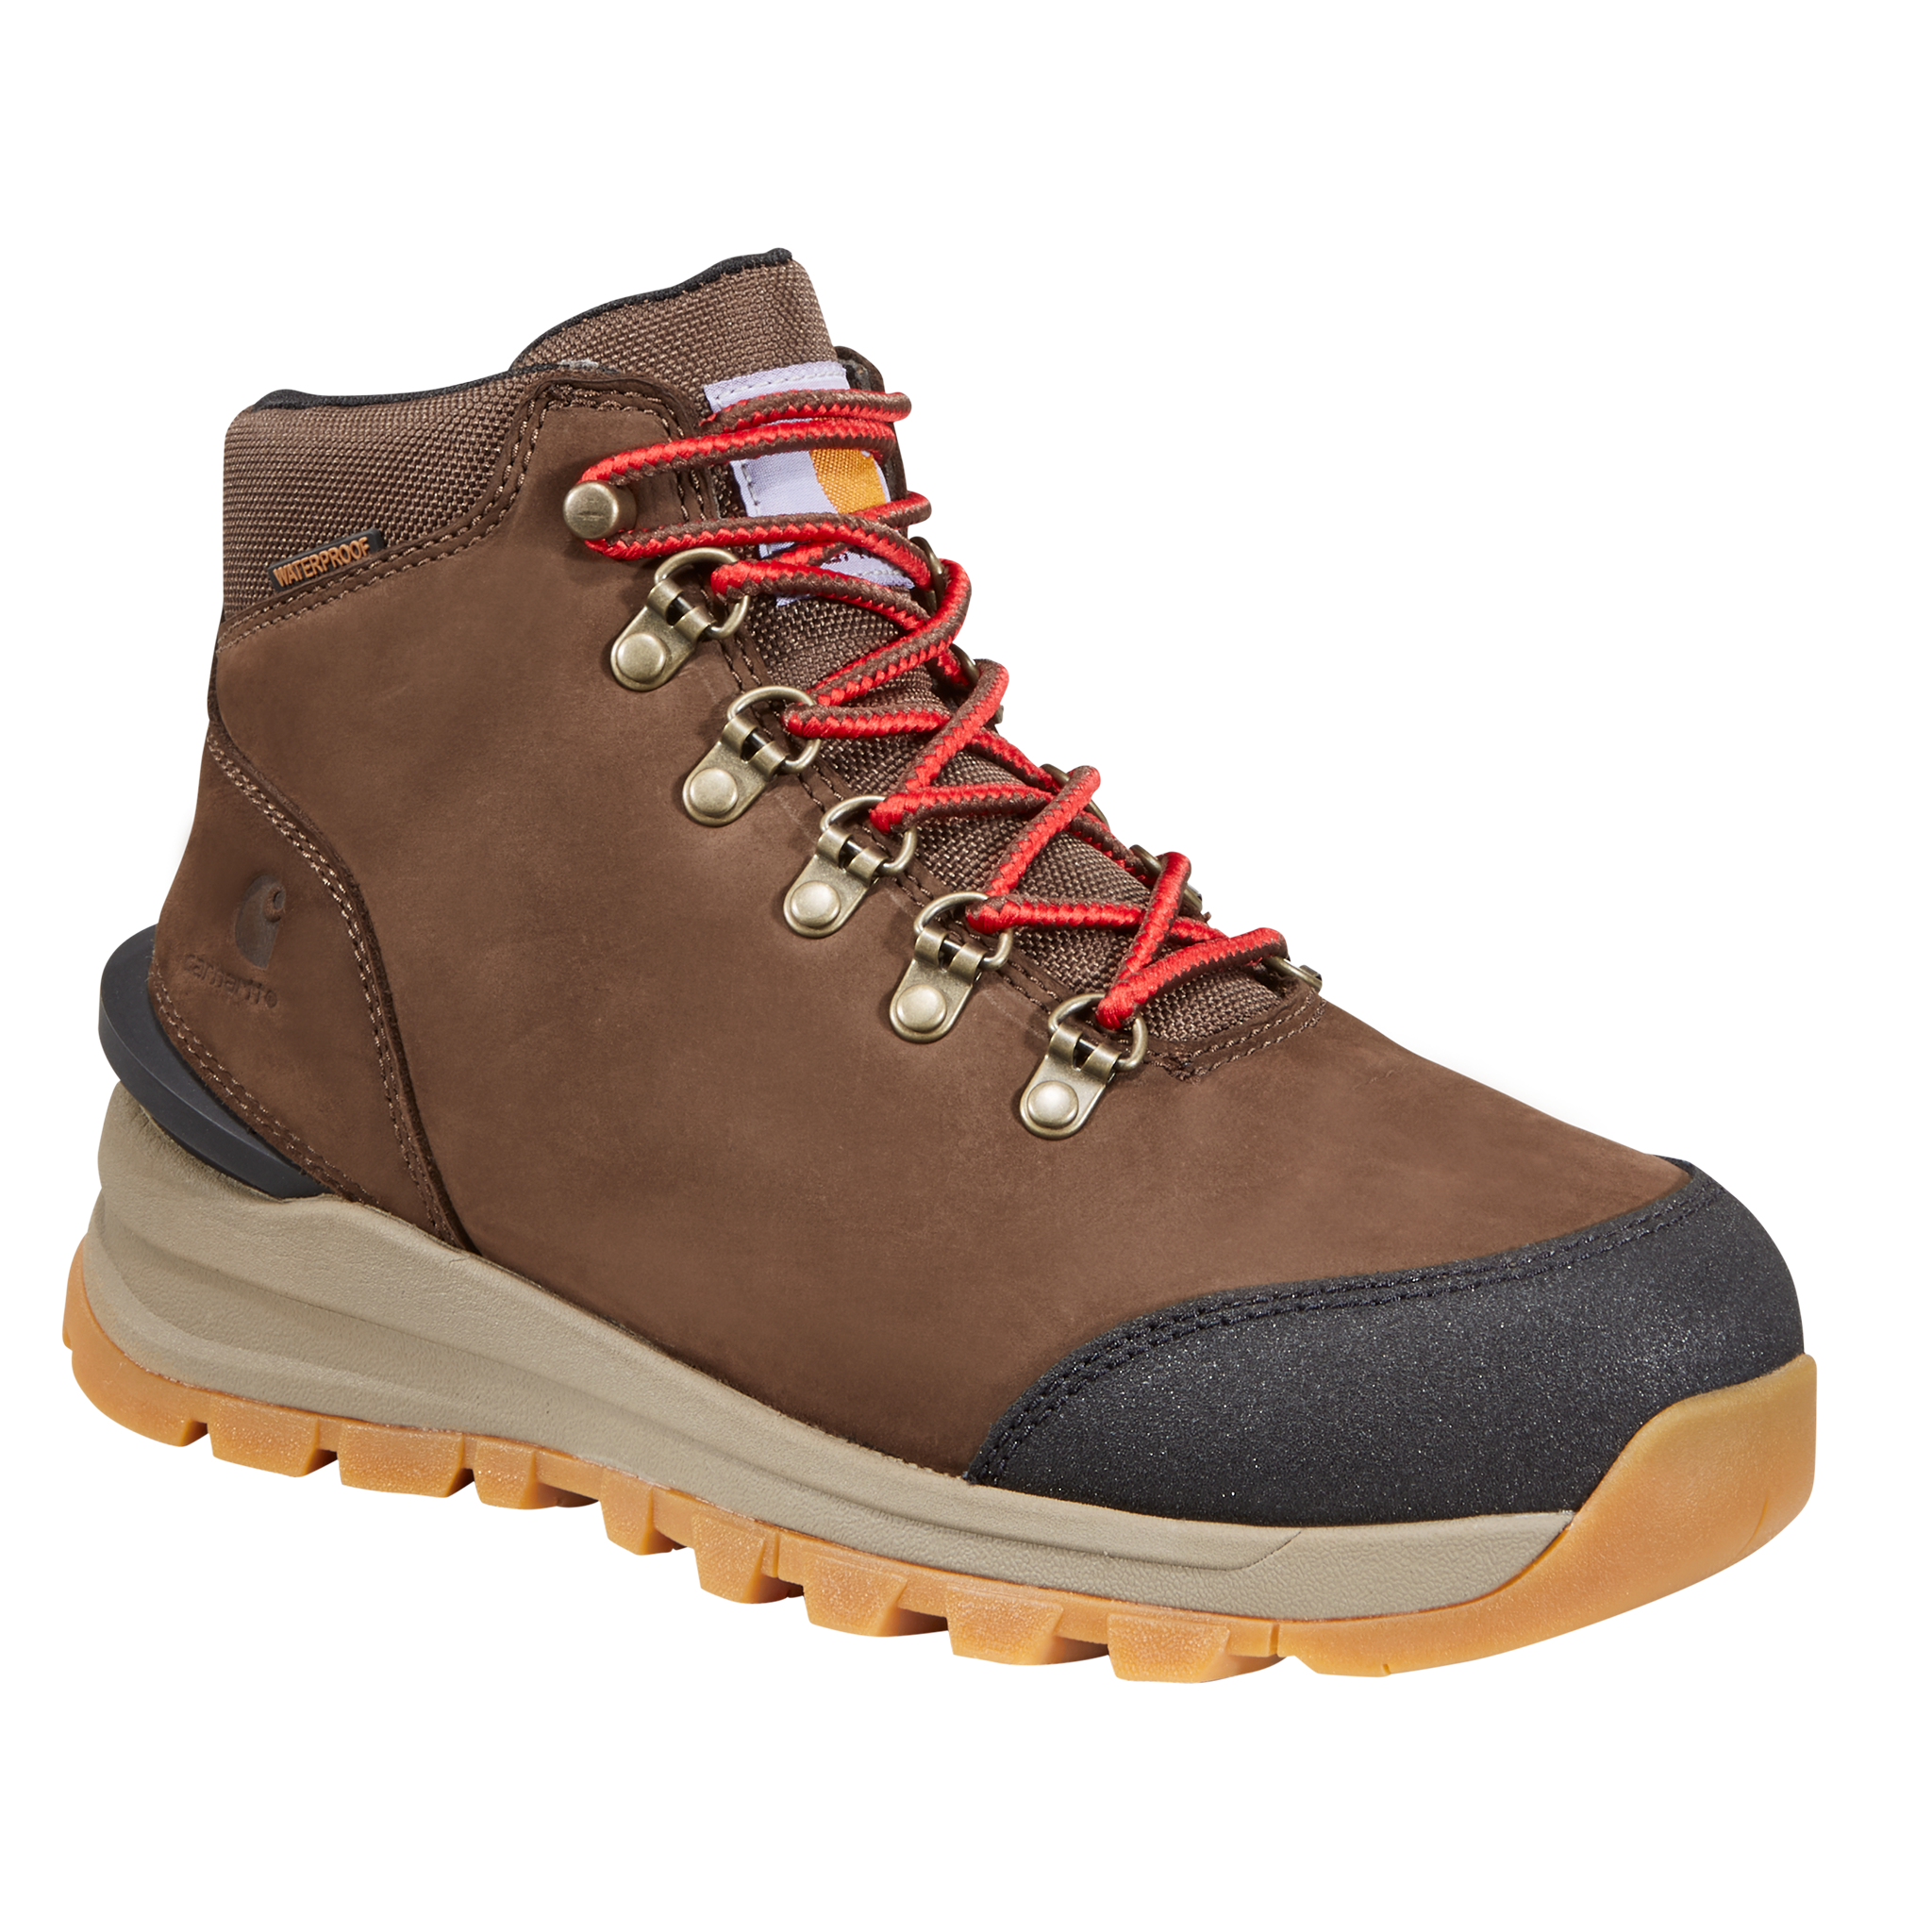 Carhartt Gilmore Waterproof Hiking Boots for Ladies - Dark Brown Nubuck - 9.5M